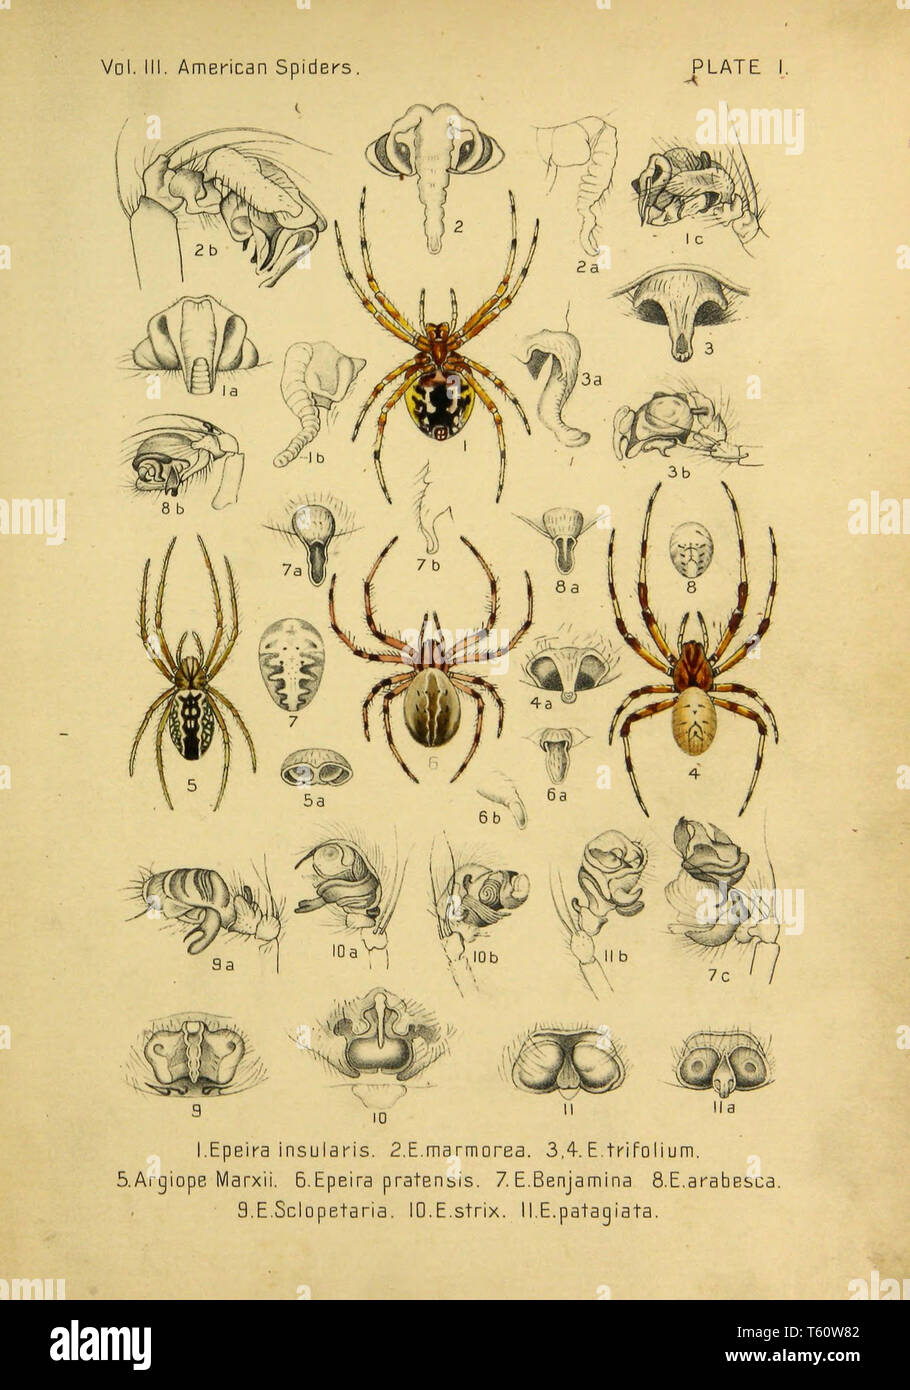 Spiders as Interior Designers